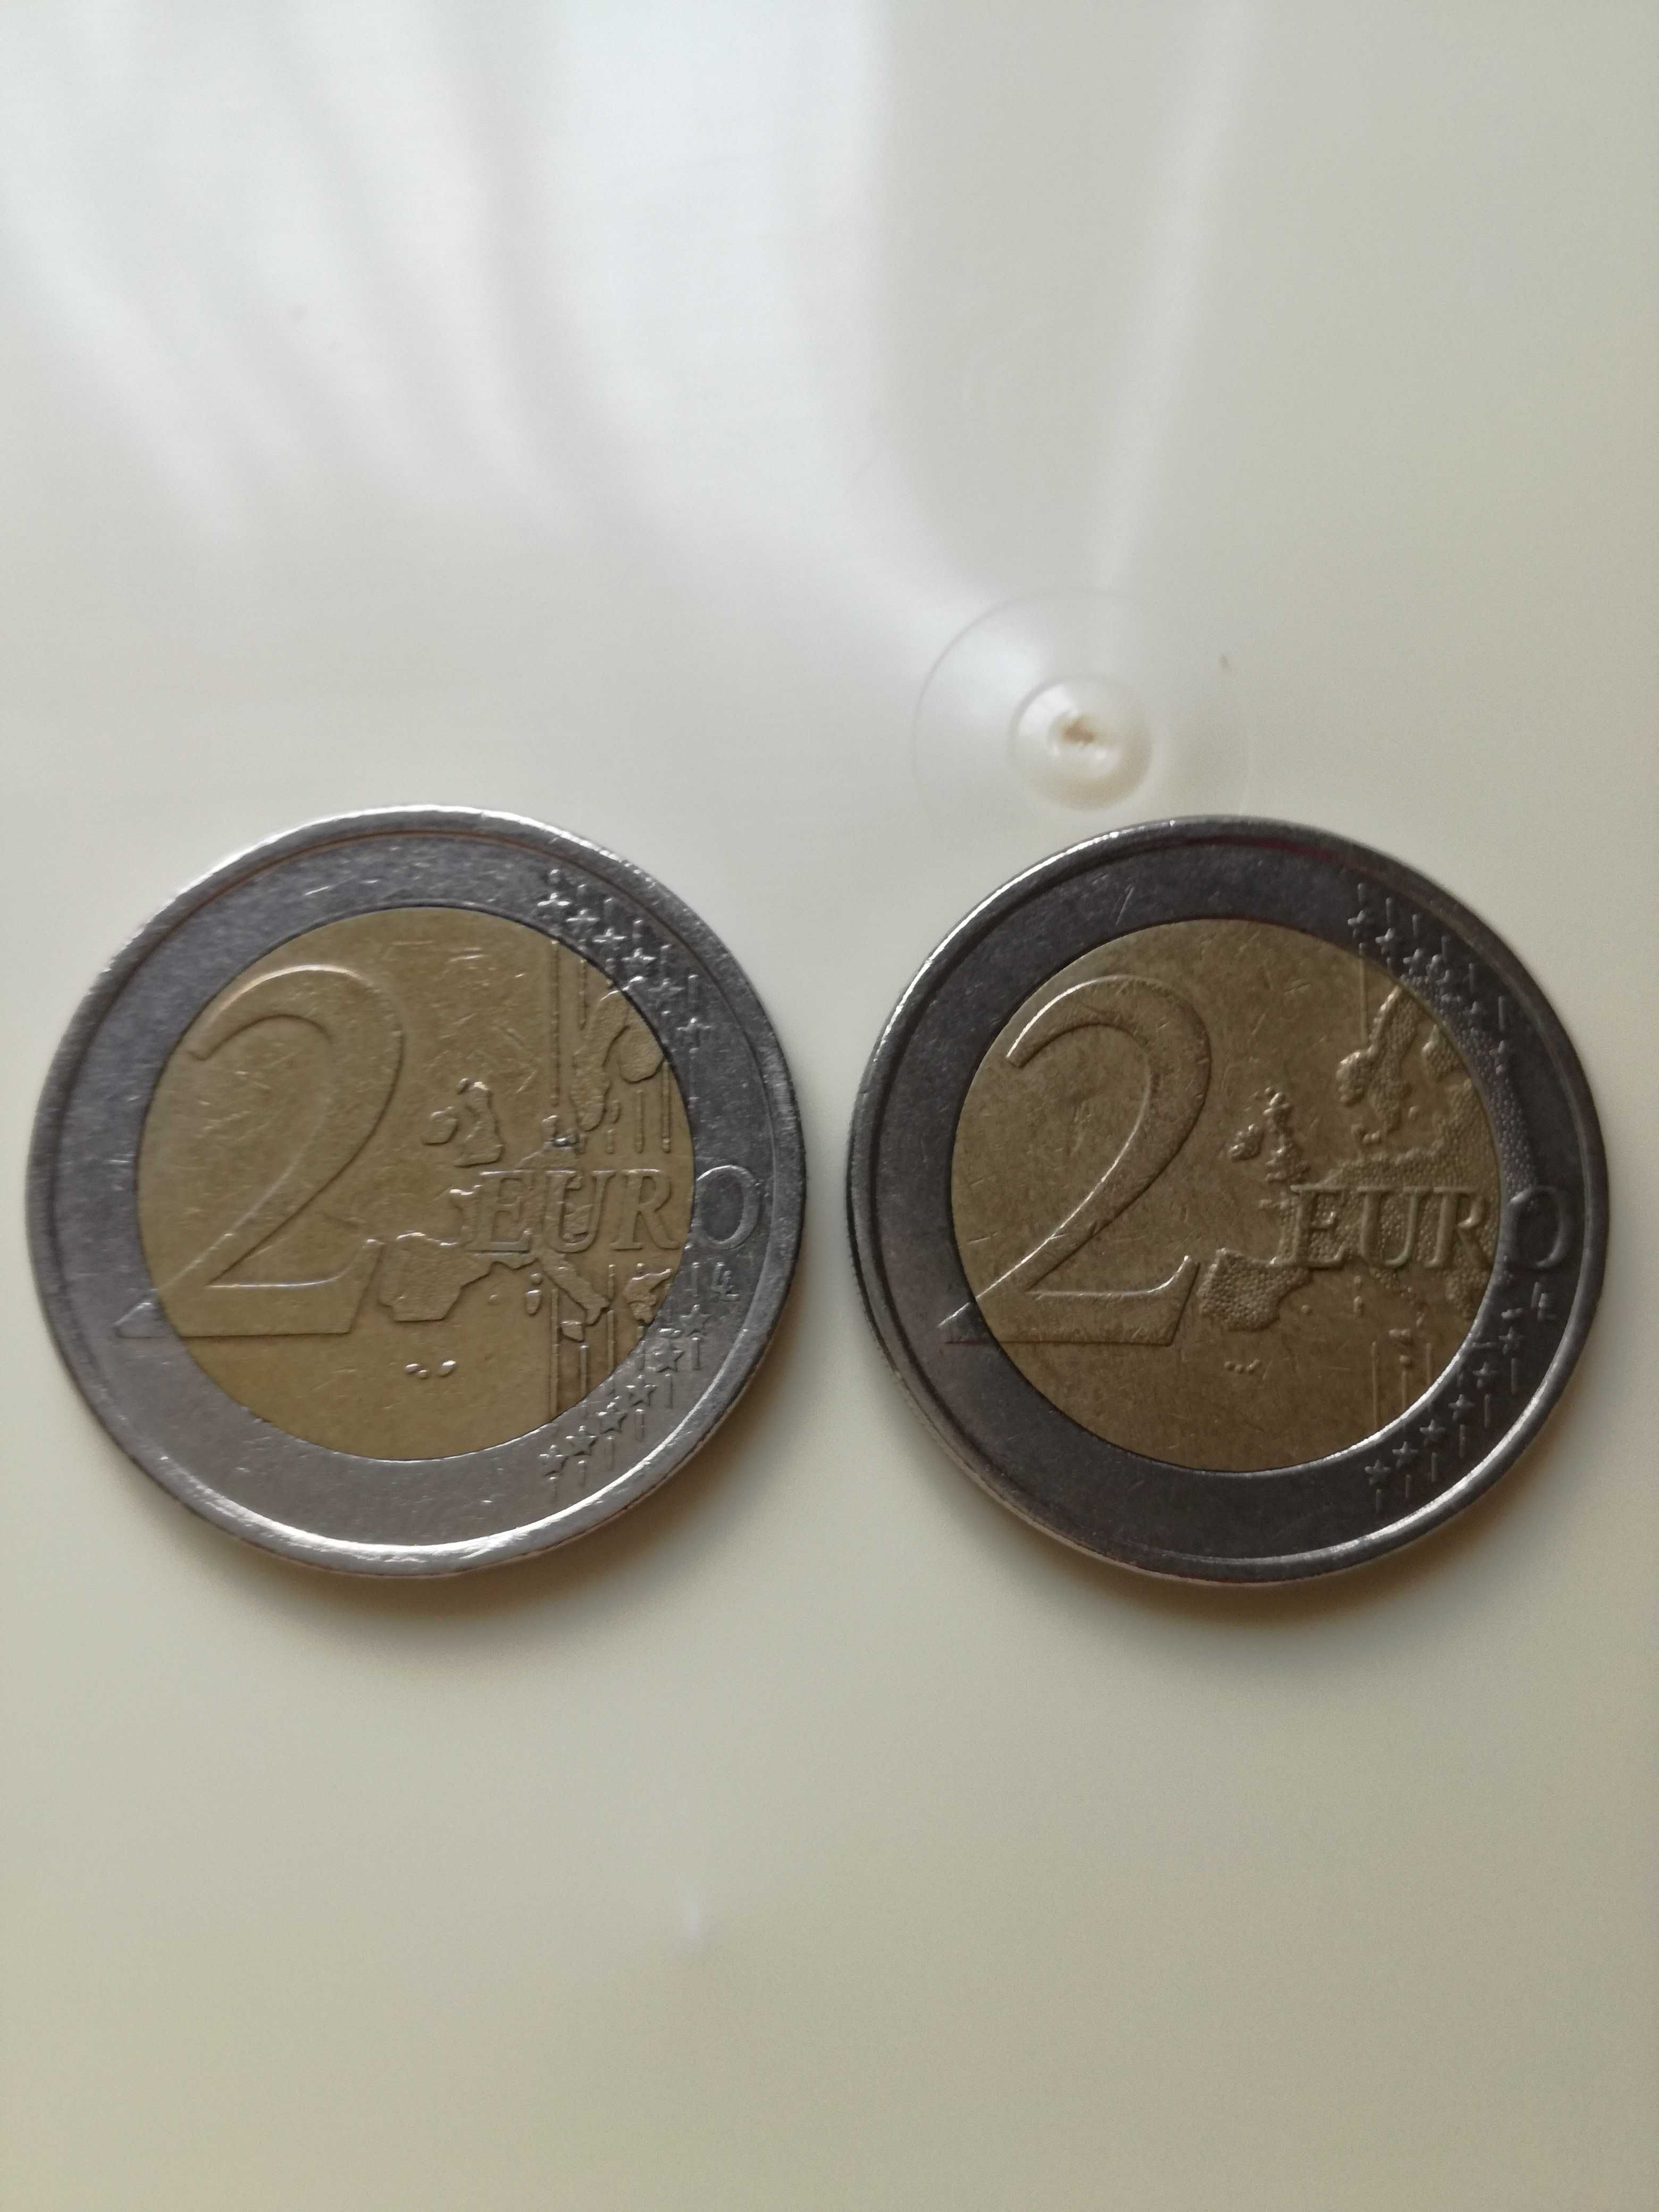 Vand monede rare cu eroare de 2 euro Finlandeze 1 euro din 1999